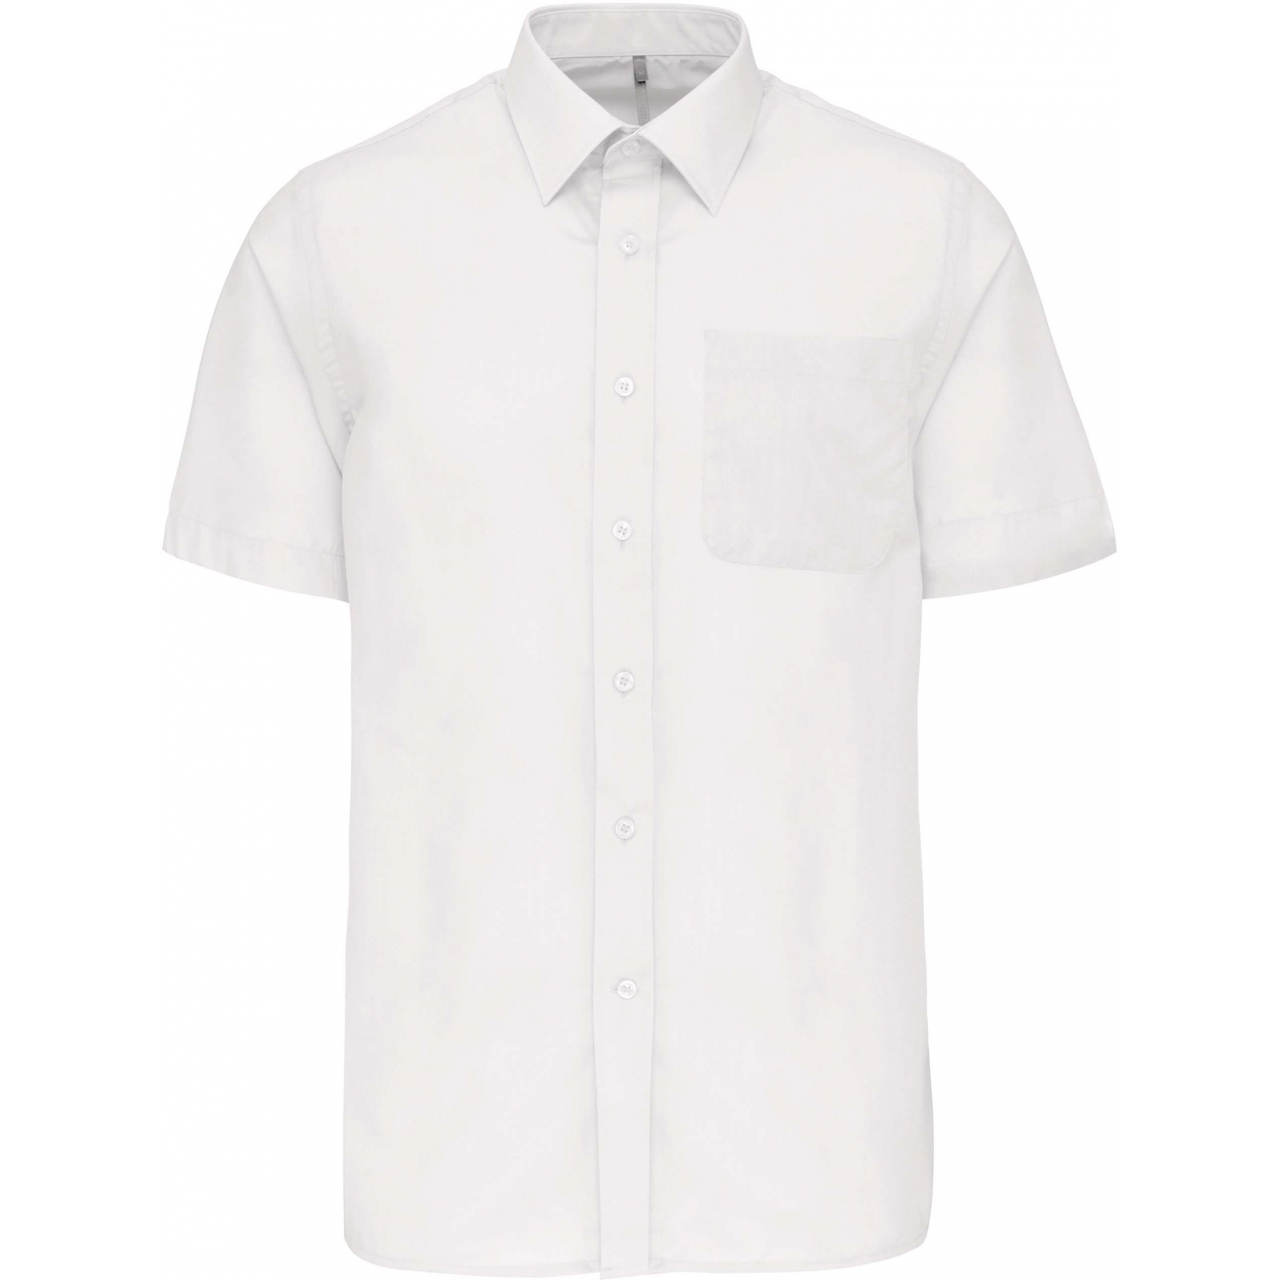 Pánská košile s krátkým rukávem Kariban ACE - bílá, XXL